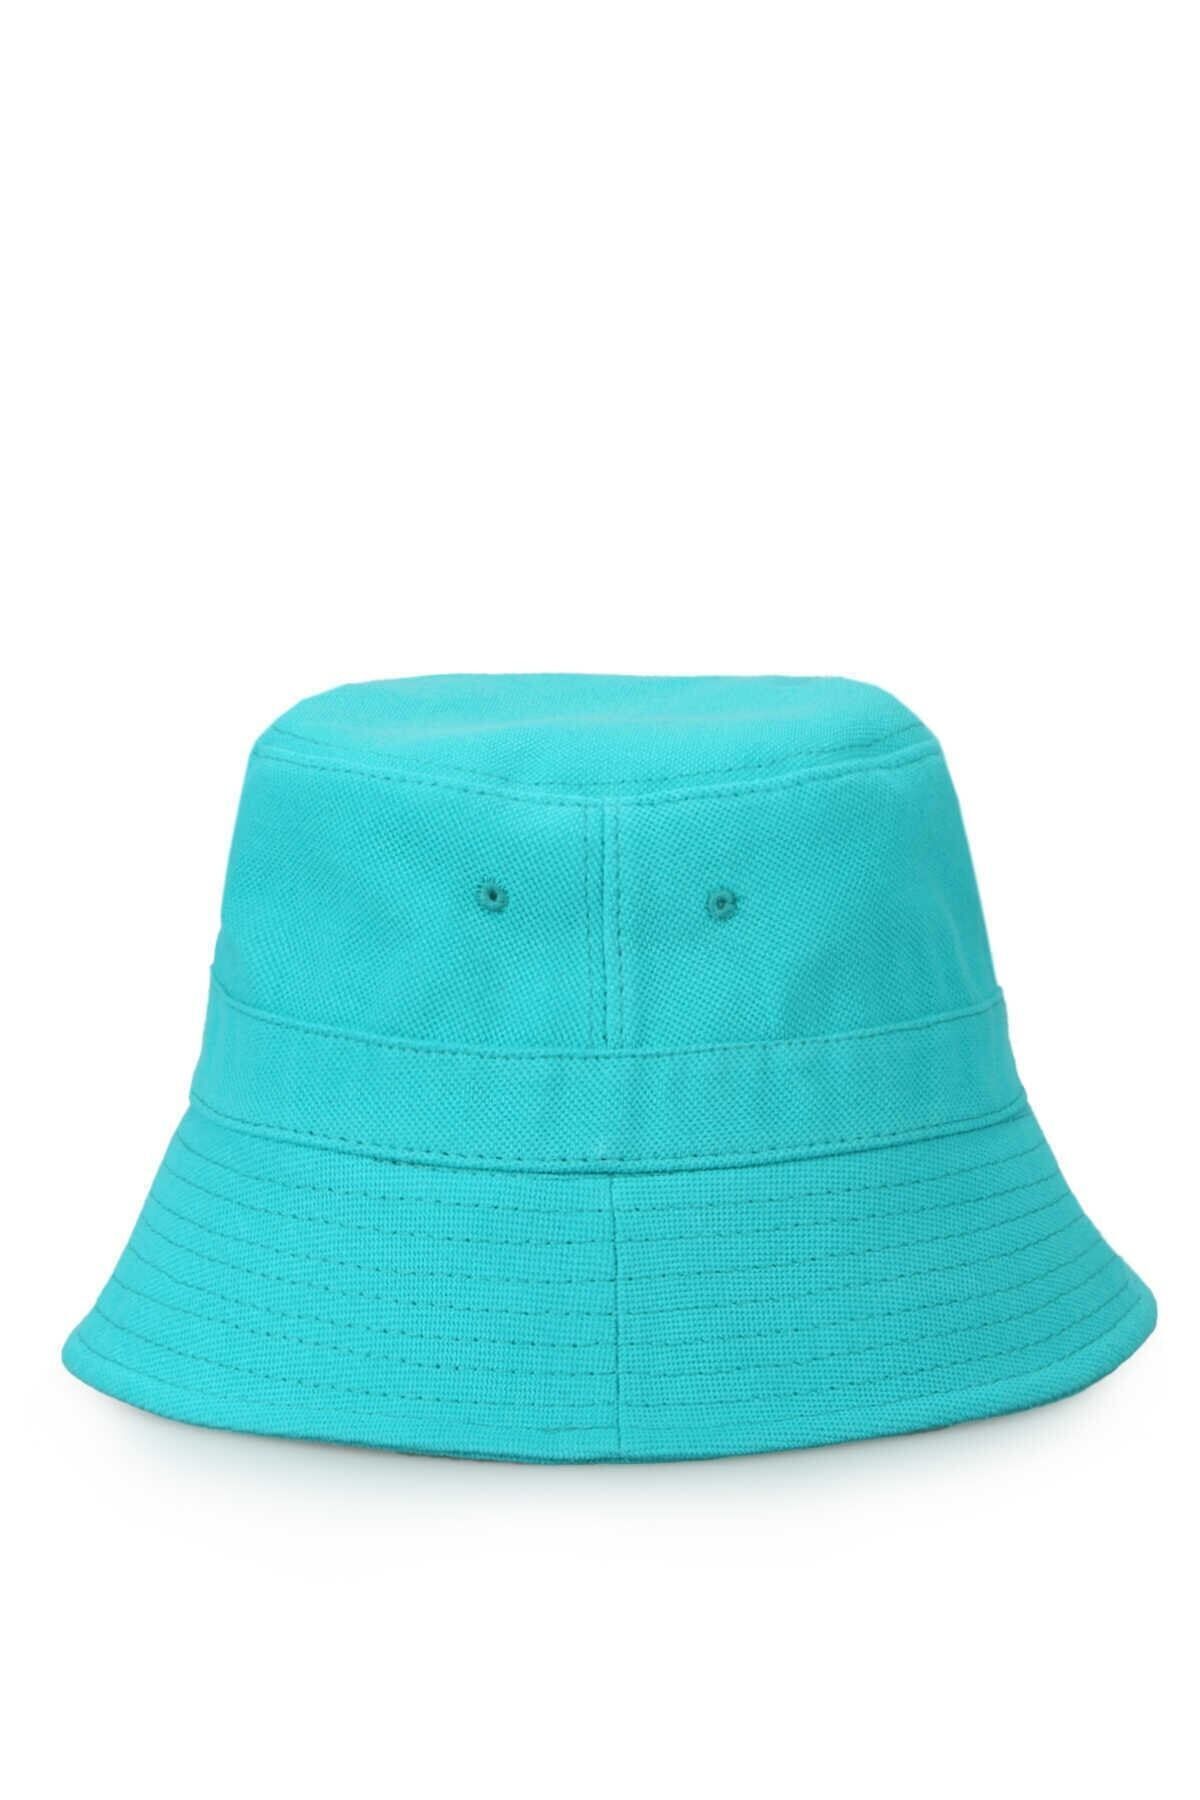 AYER TİCARET Bucket / Balıkçı Şapkası